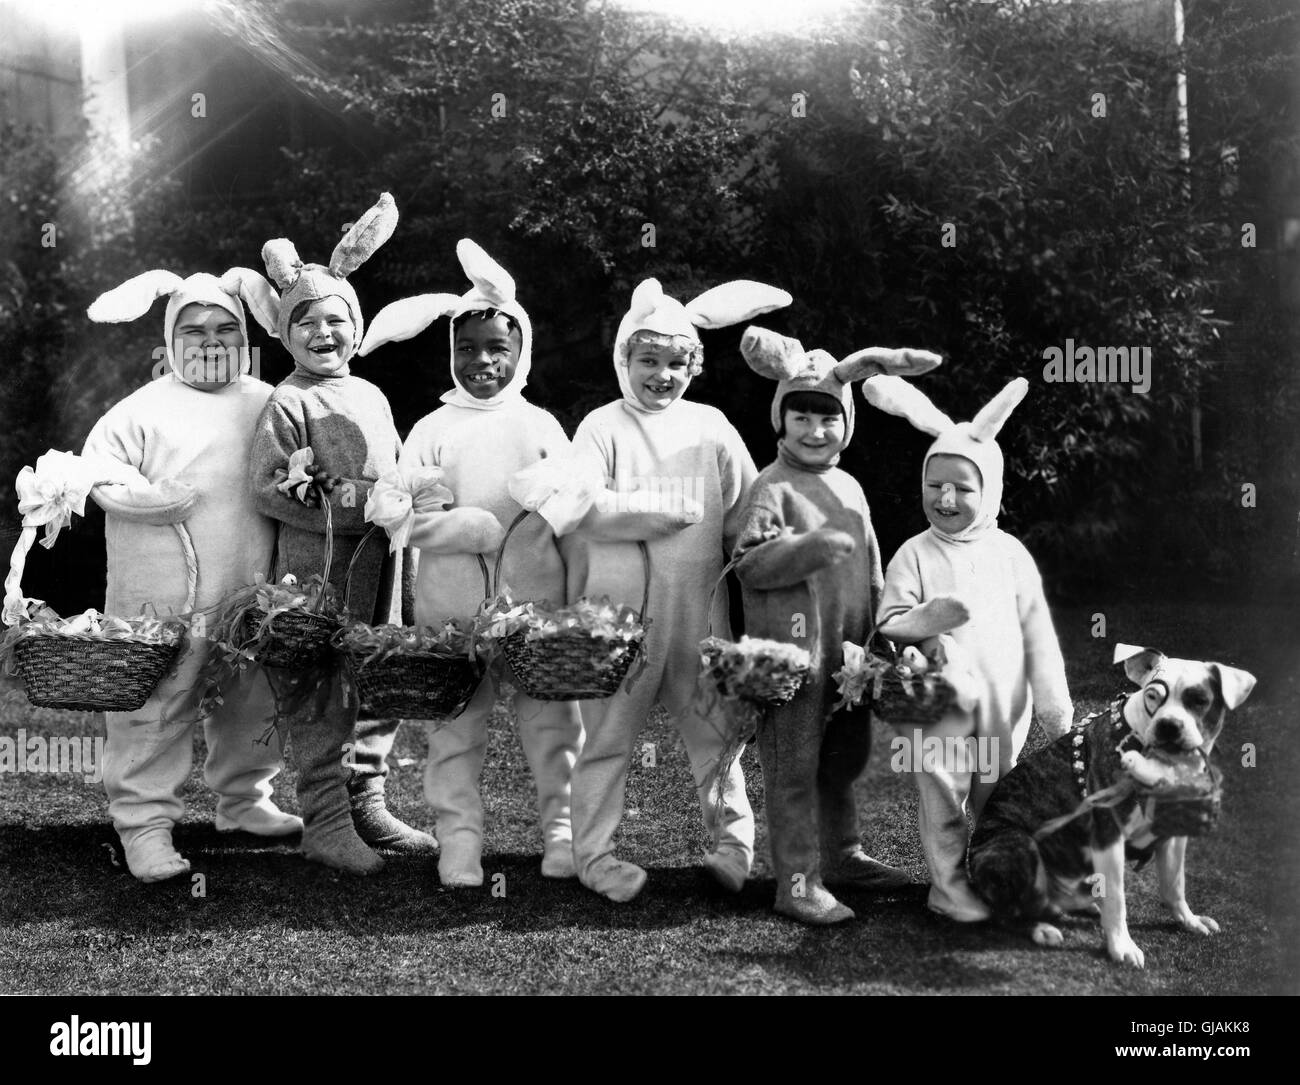 The Little Rascals, aka: Die kleinen Strolche verkleidet als Osterhasen, USA 1930er Jahre. The Little Rascals dressed as Easter bunnies, USA 1930s. Stock Photo